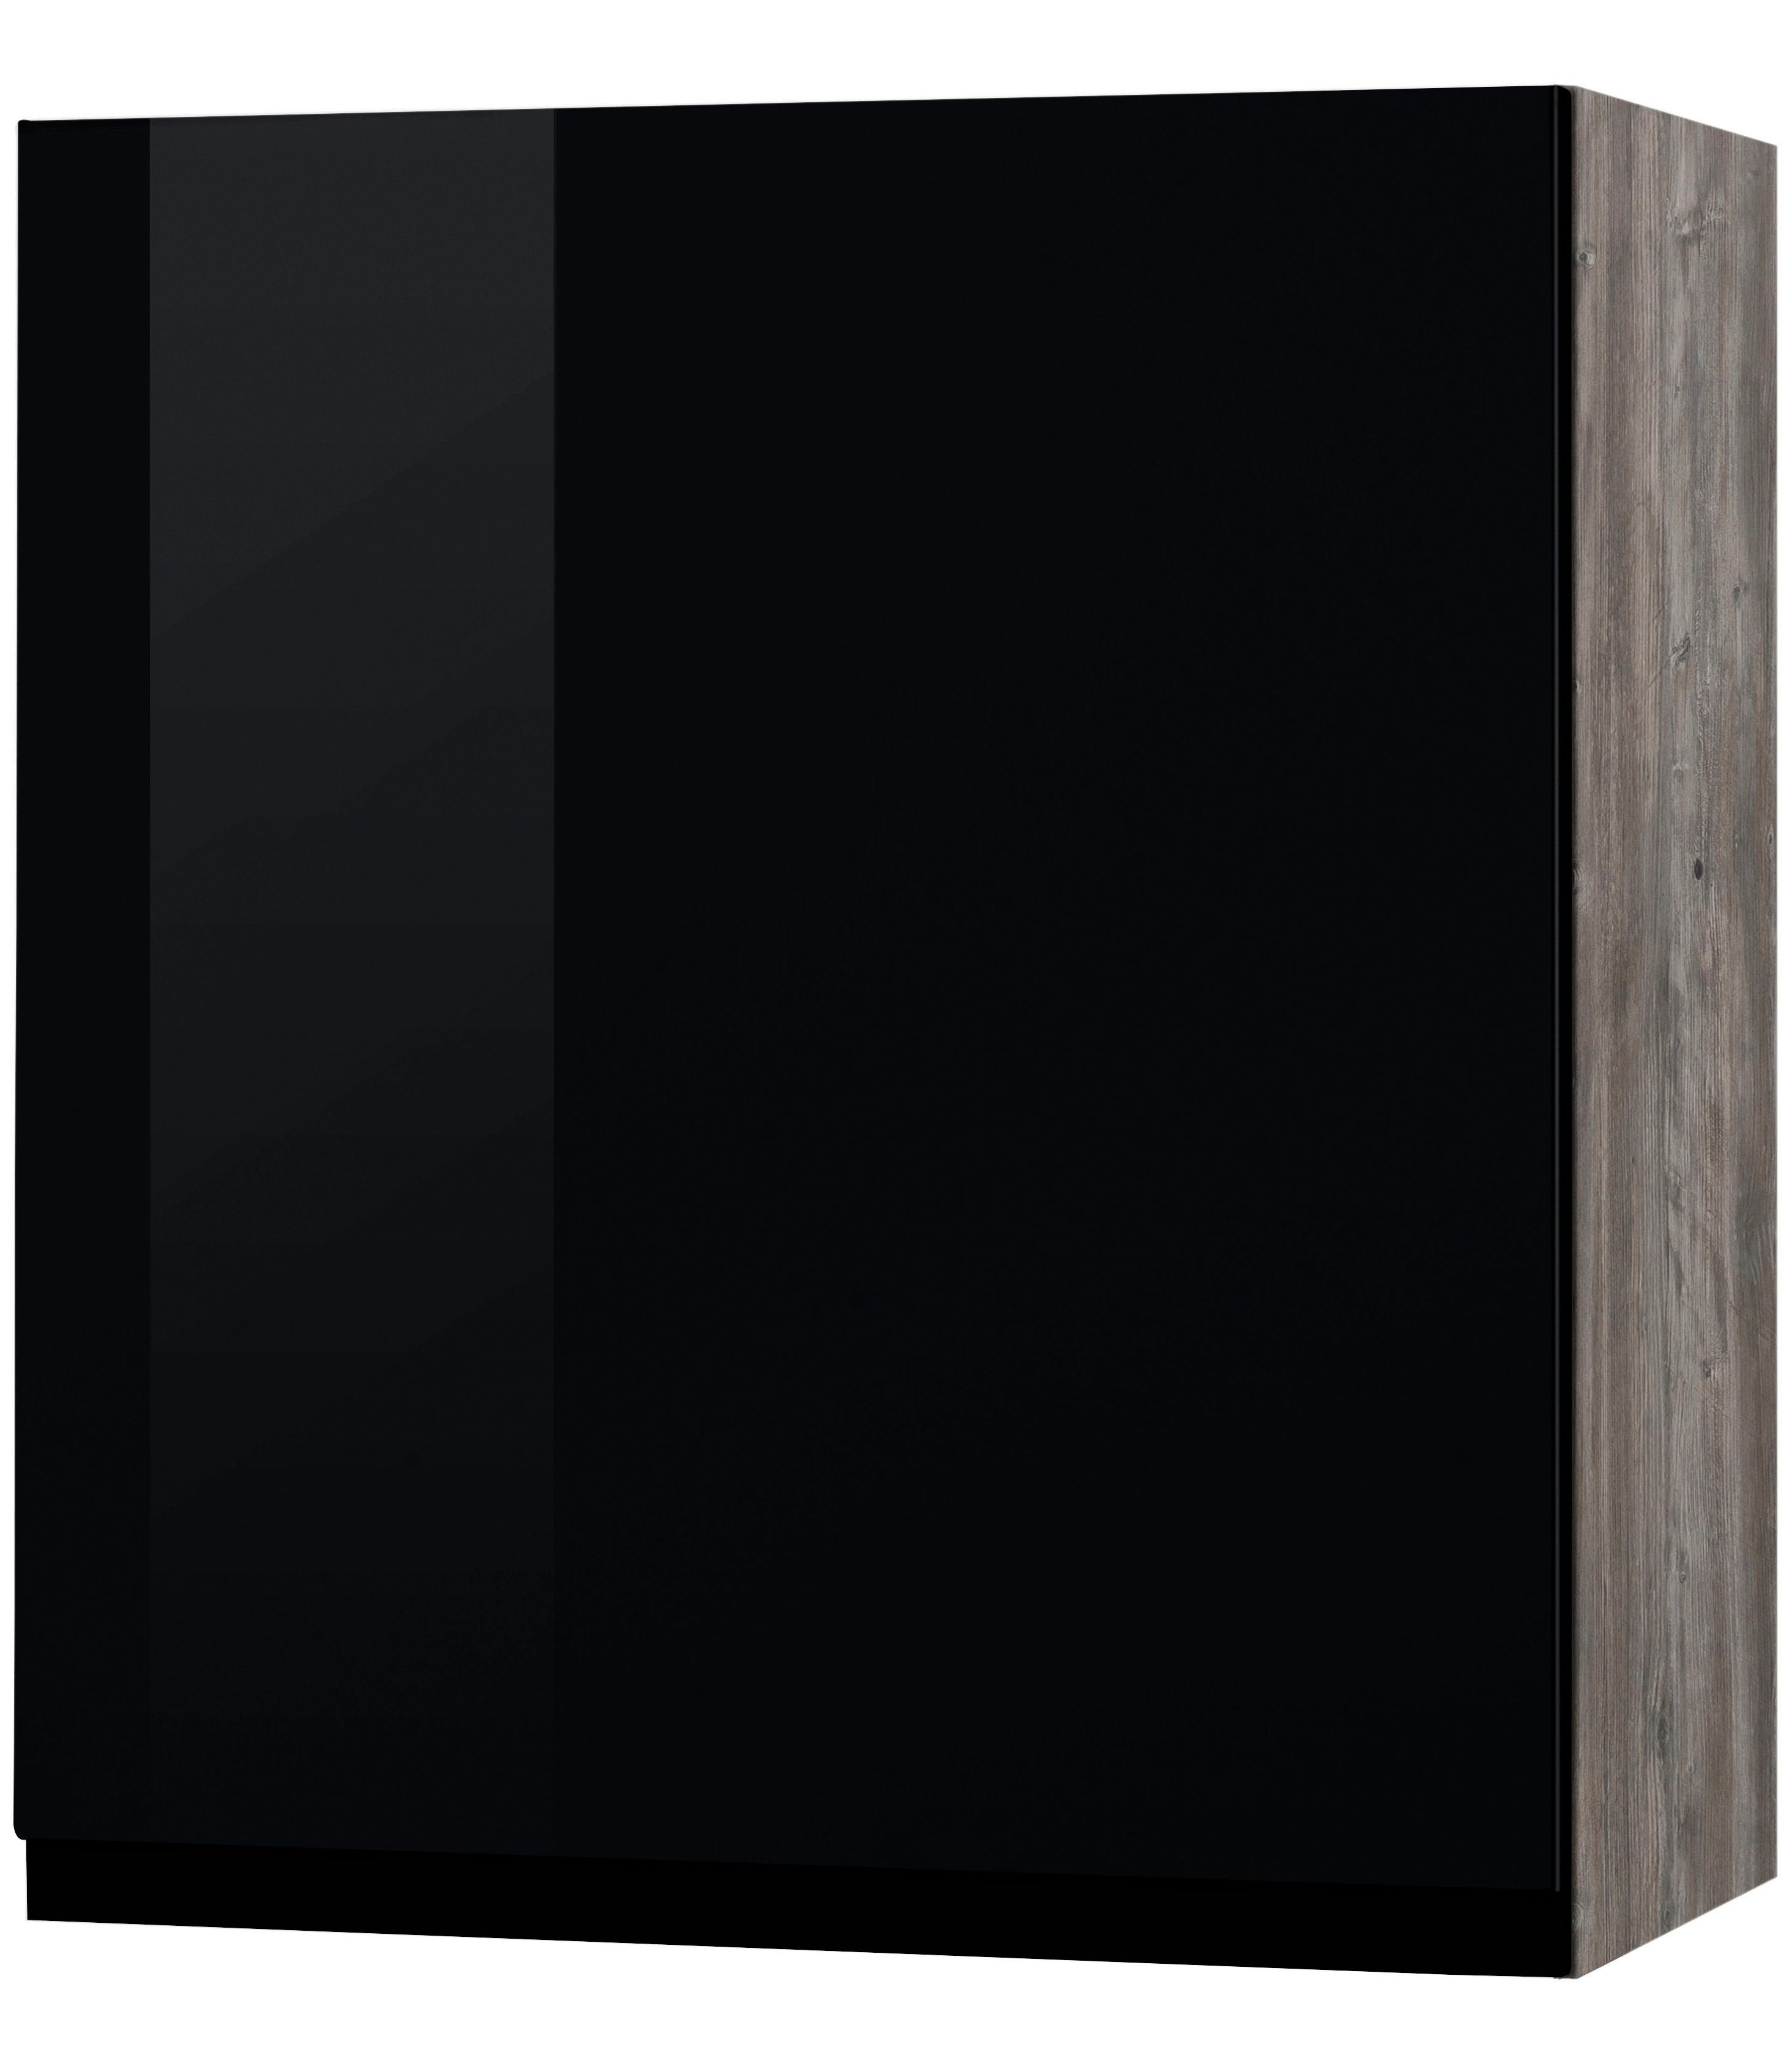 HELD MÖBEL Hängeschrank Virginia 50 cm breit, mit 1 Tür schwarz Hochglanz | eichevintage | Hängeschränke